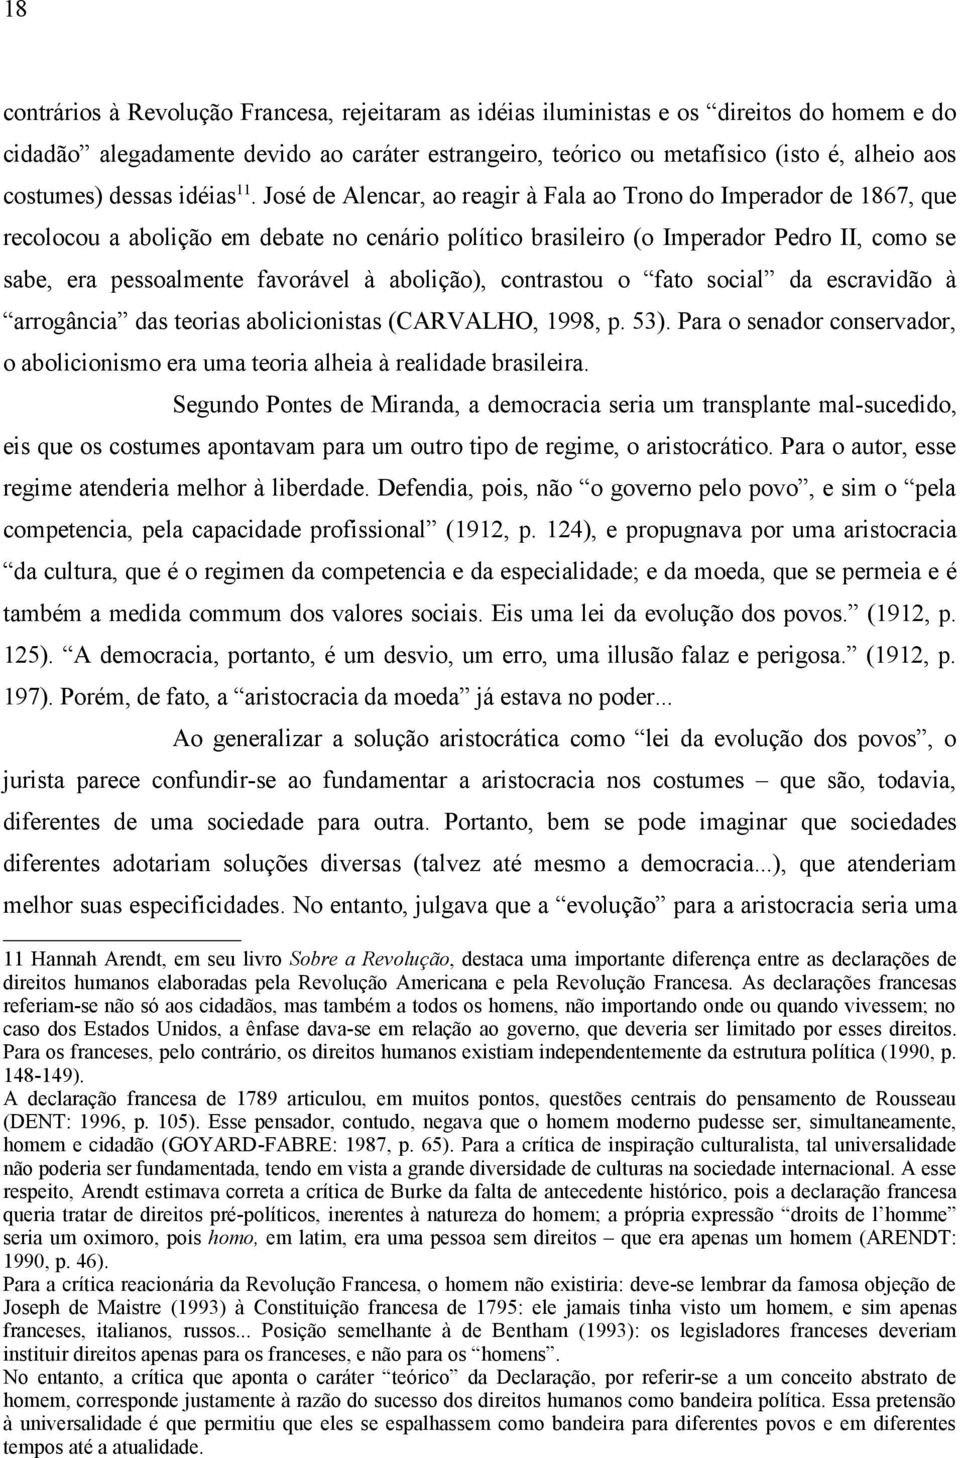 José de Alencar, ao reagir à Fala ao Trono do Imperador de 1867, que recolocou a abolição em debate no cenário político brasileiro (o Imperador Pedro II, como se sabe, era pessoalmente favorável à